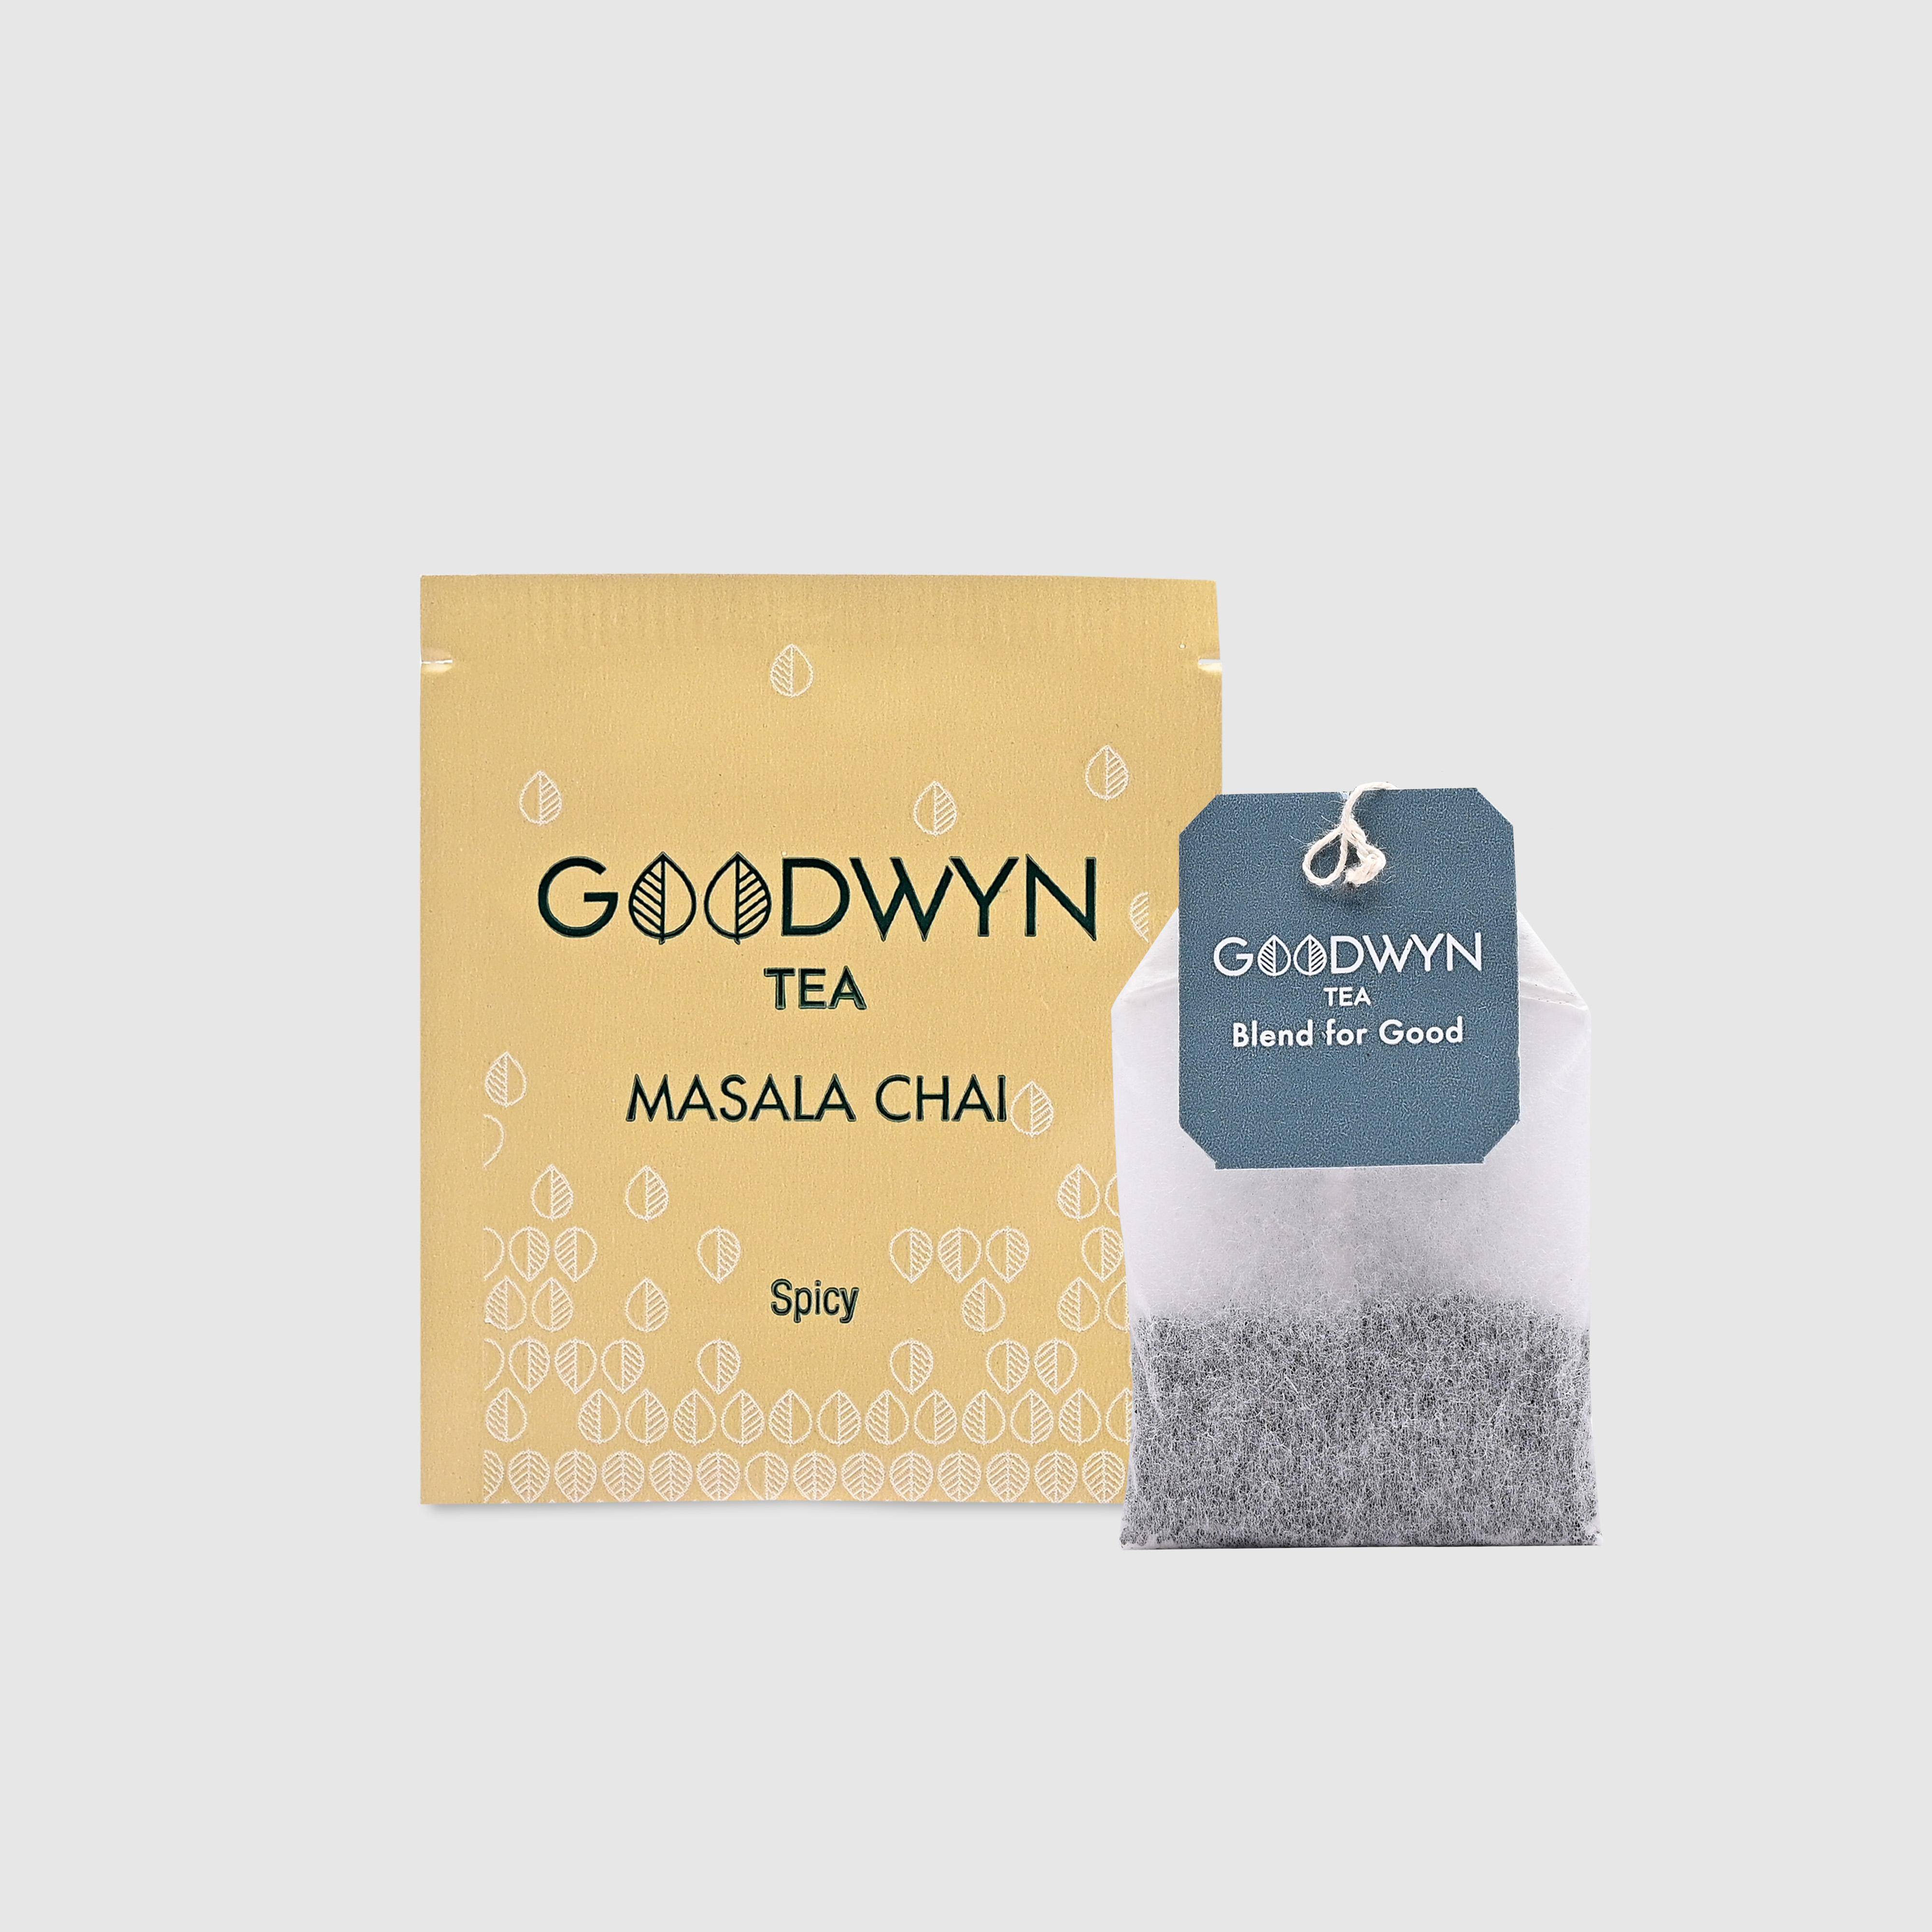 Goodwyn Masala Chai Enveloped Tea Bags 100s